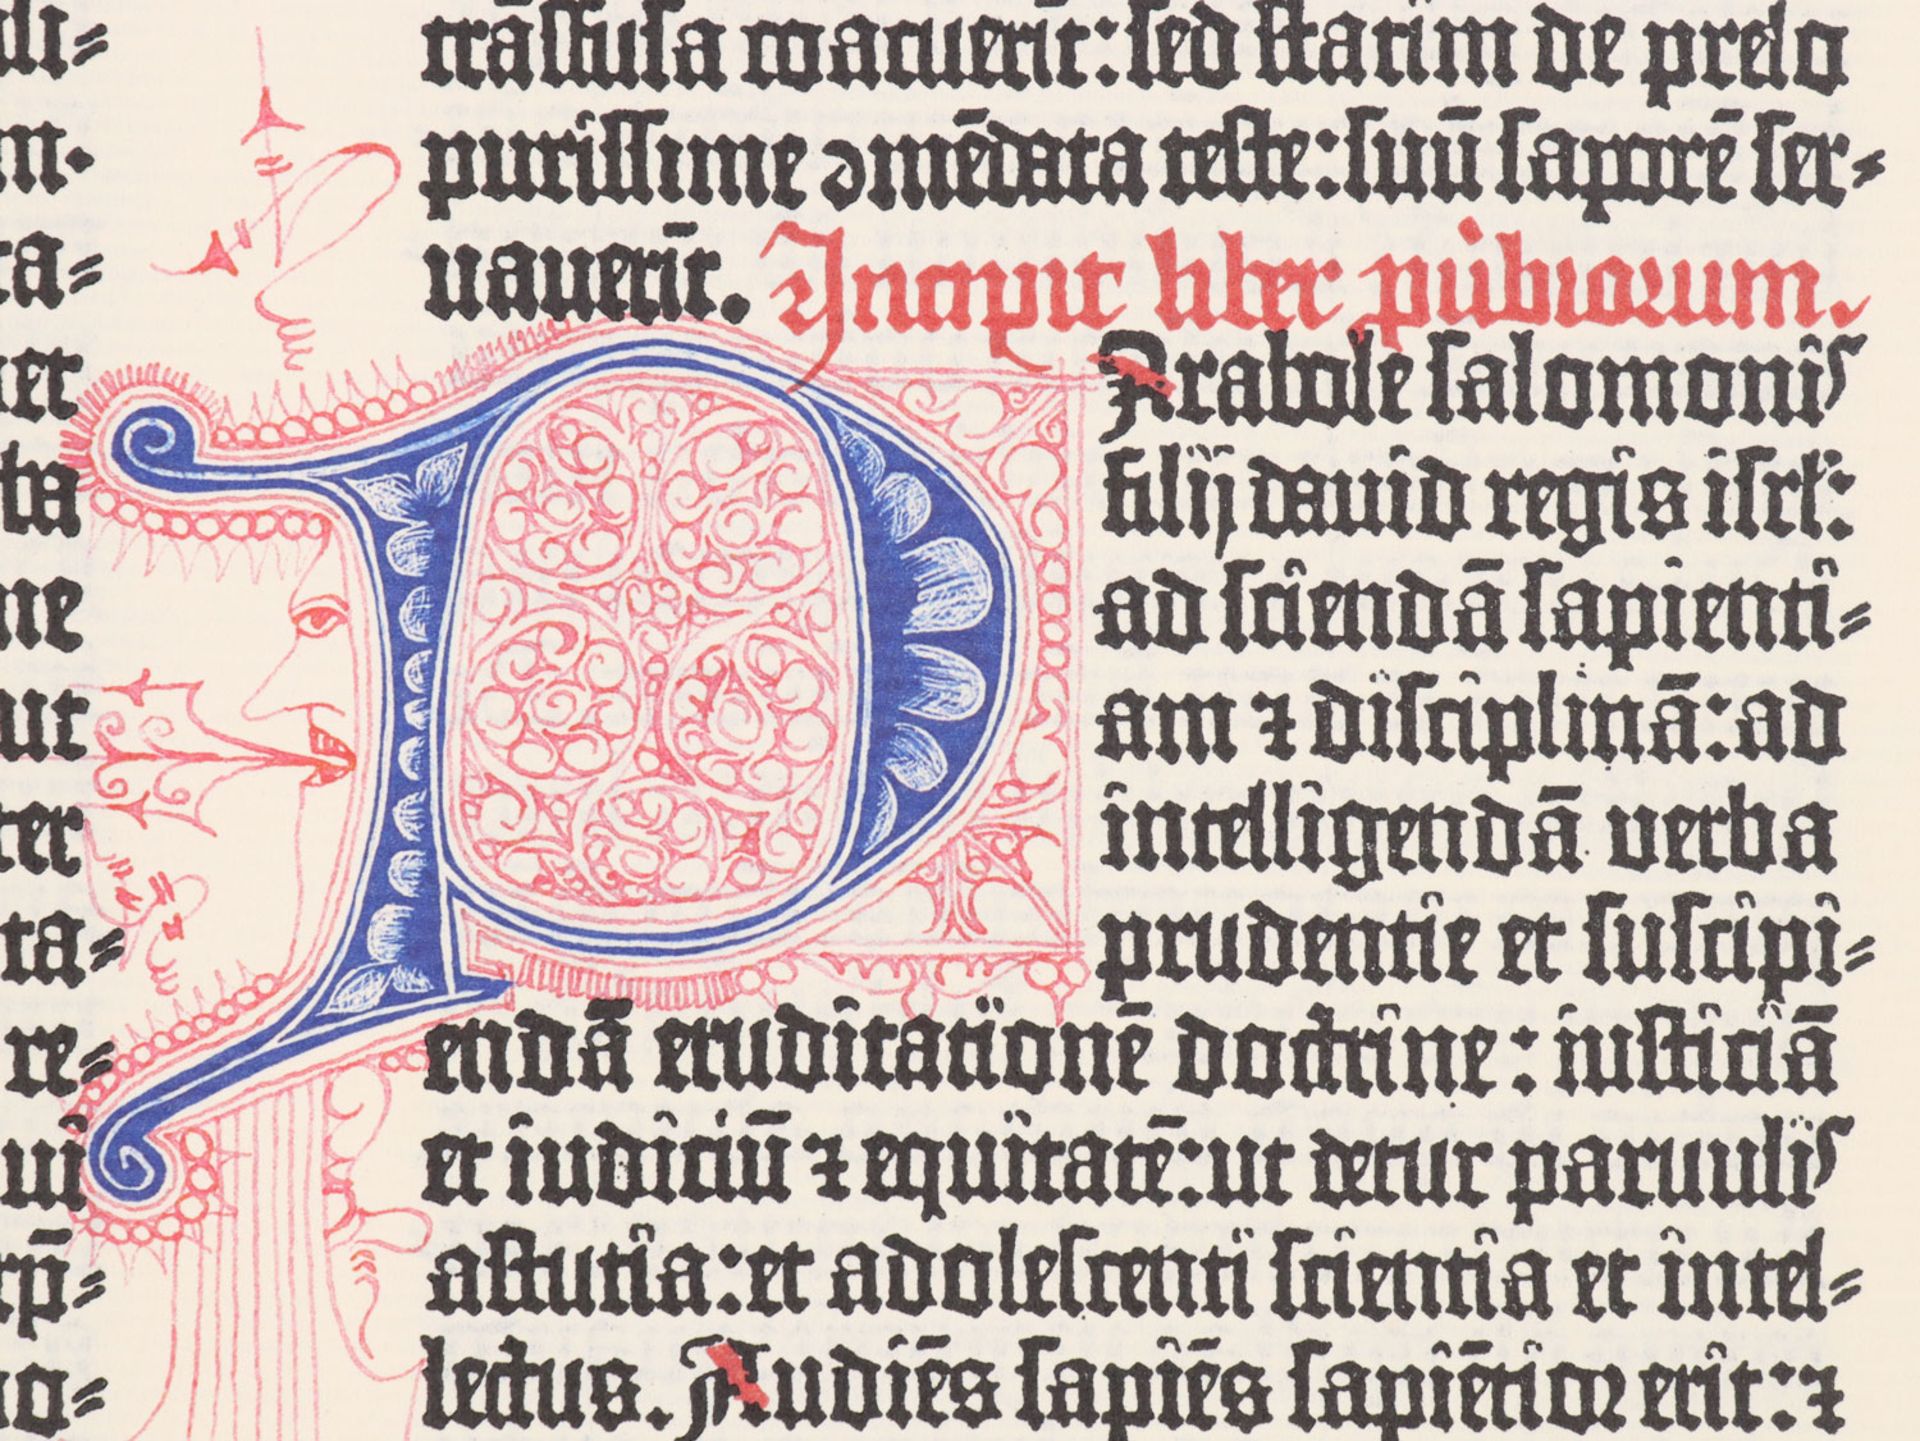 Gutenberg Bibel Faksimele - Image 17 of 20